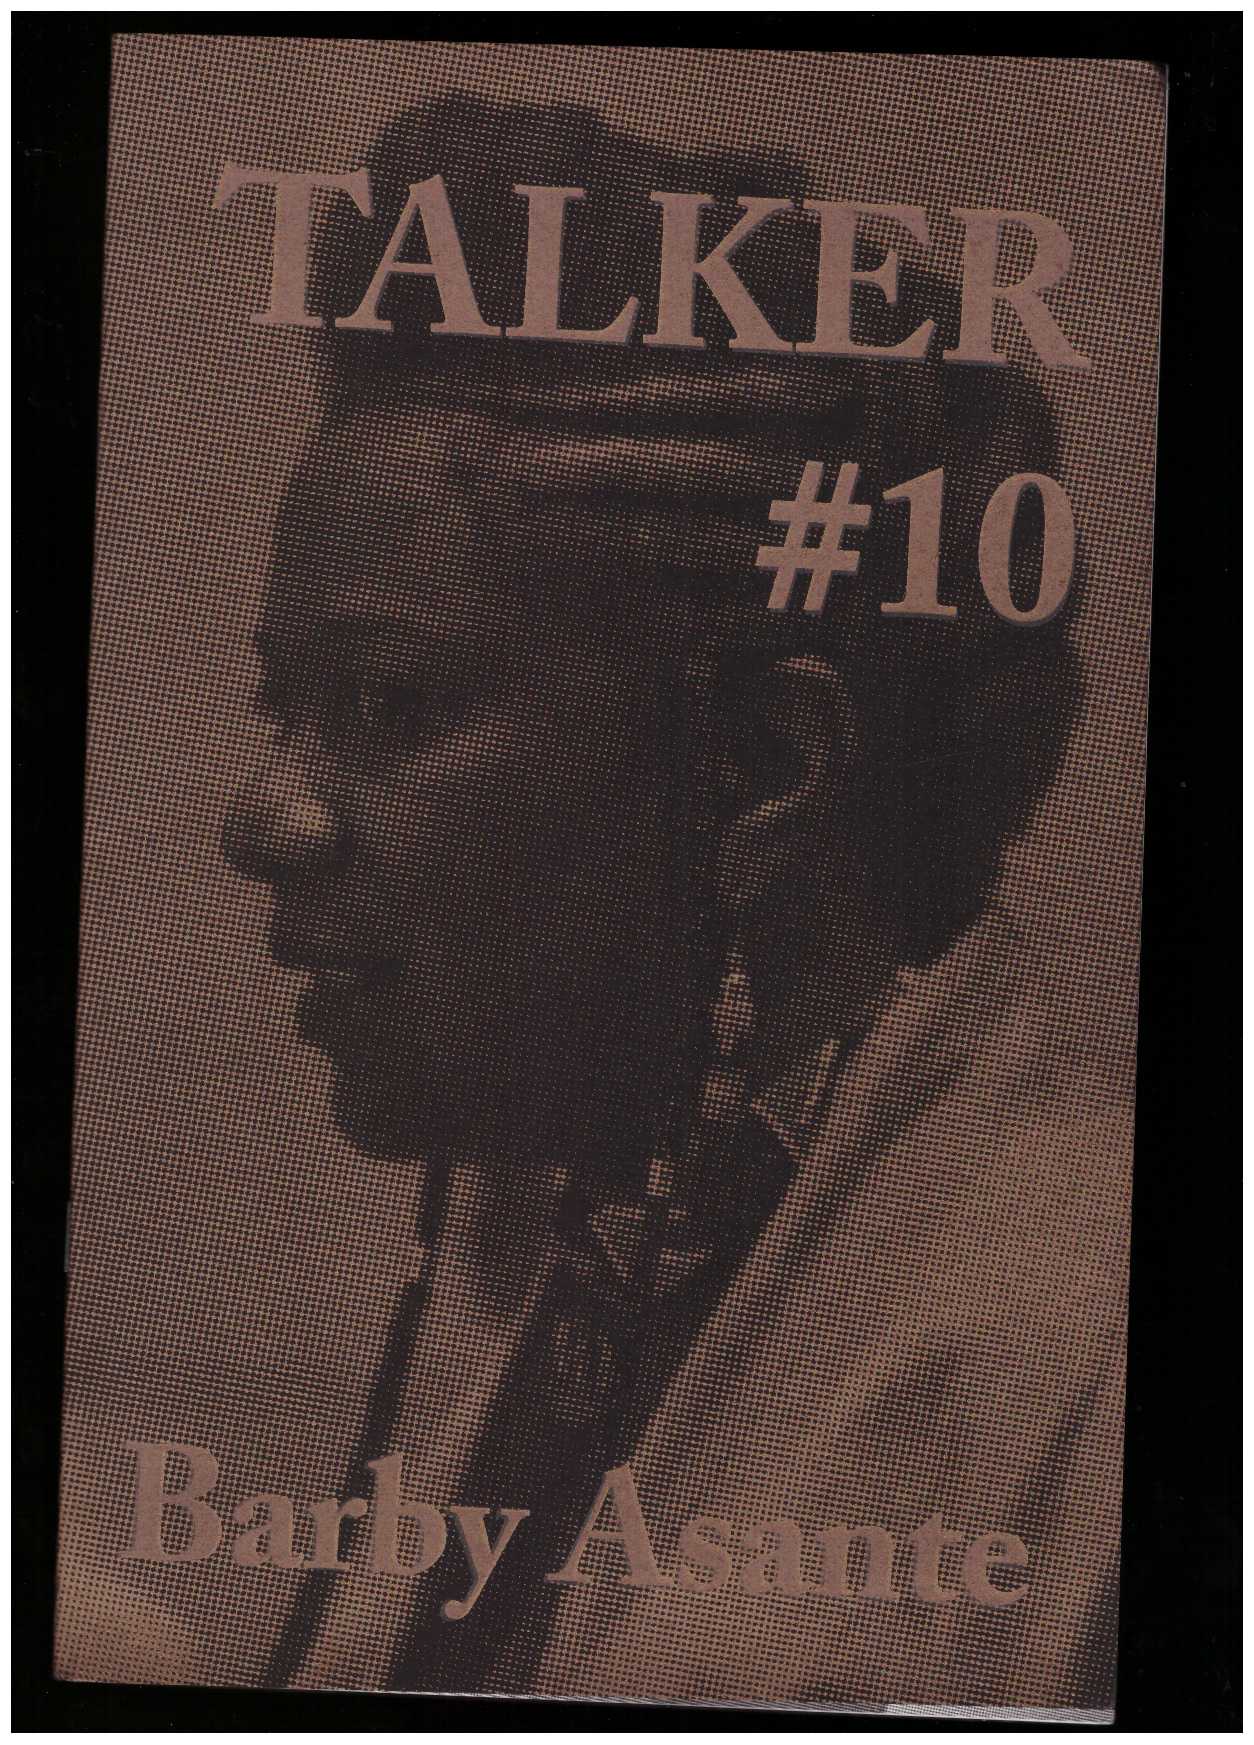 ASANTE, Barby; BAILEY, Giles (ed.) - Talker #10: Barby Asante